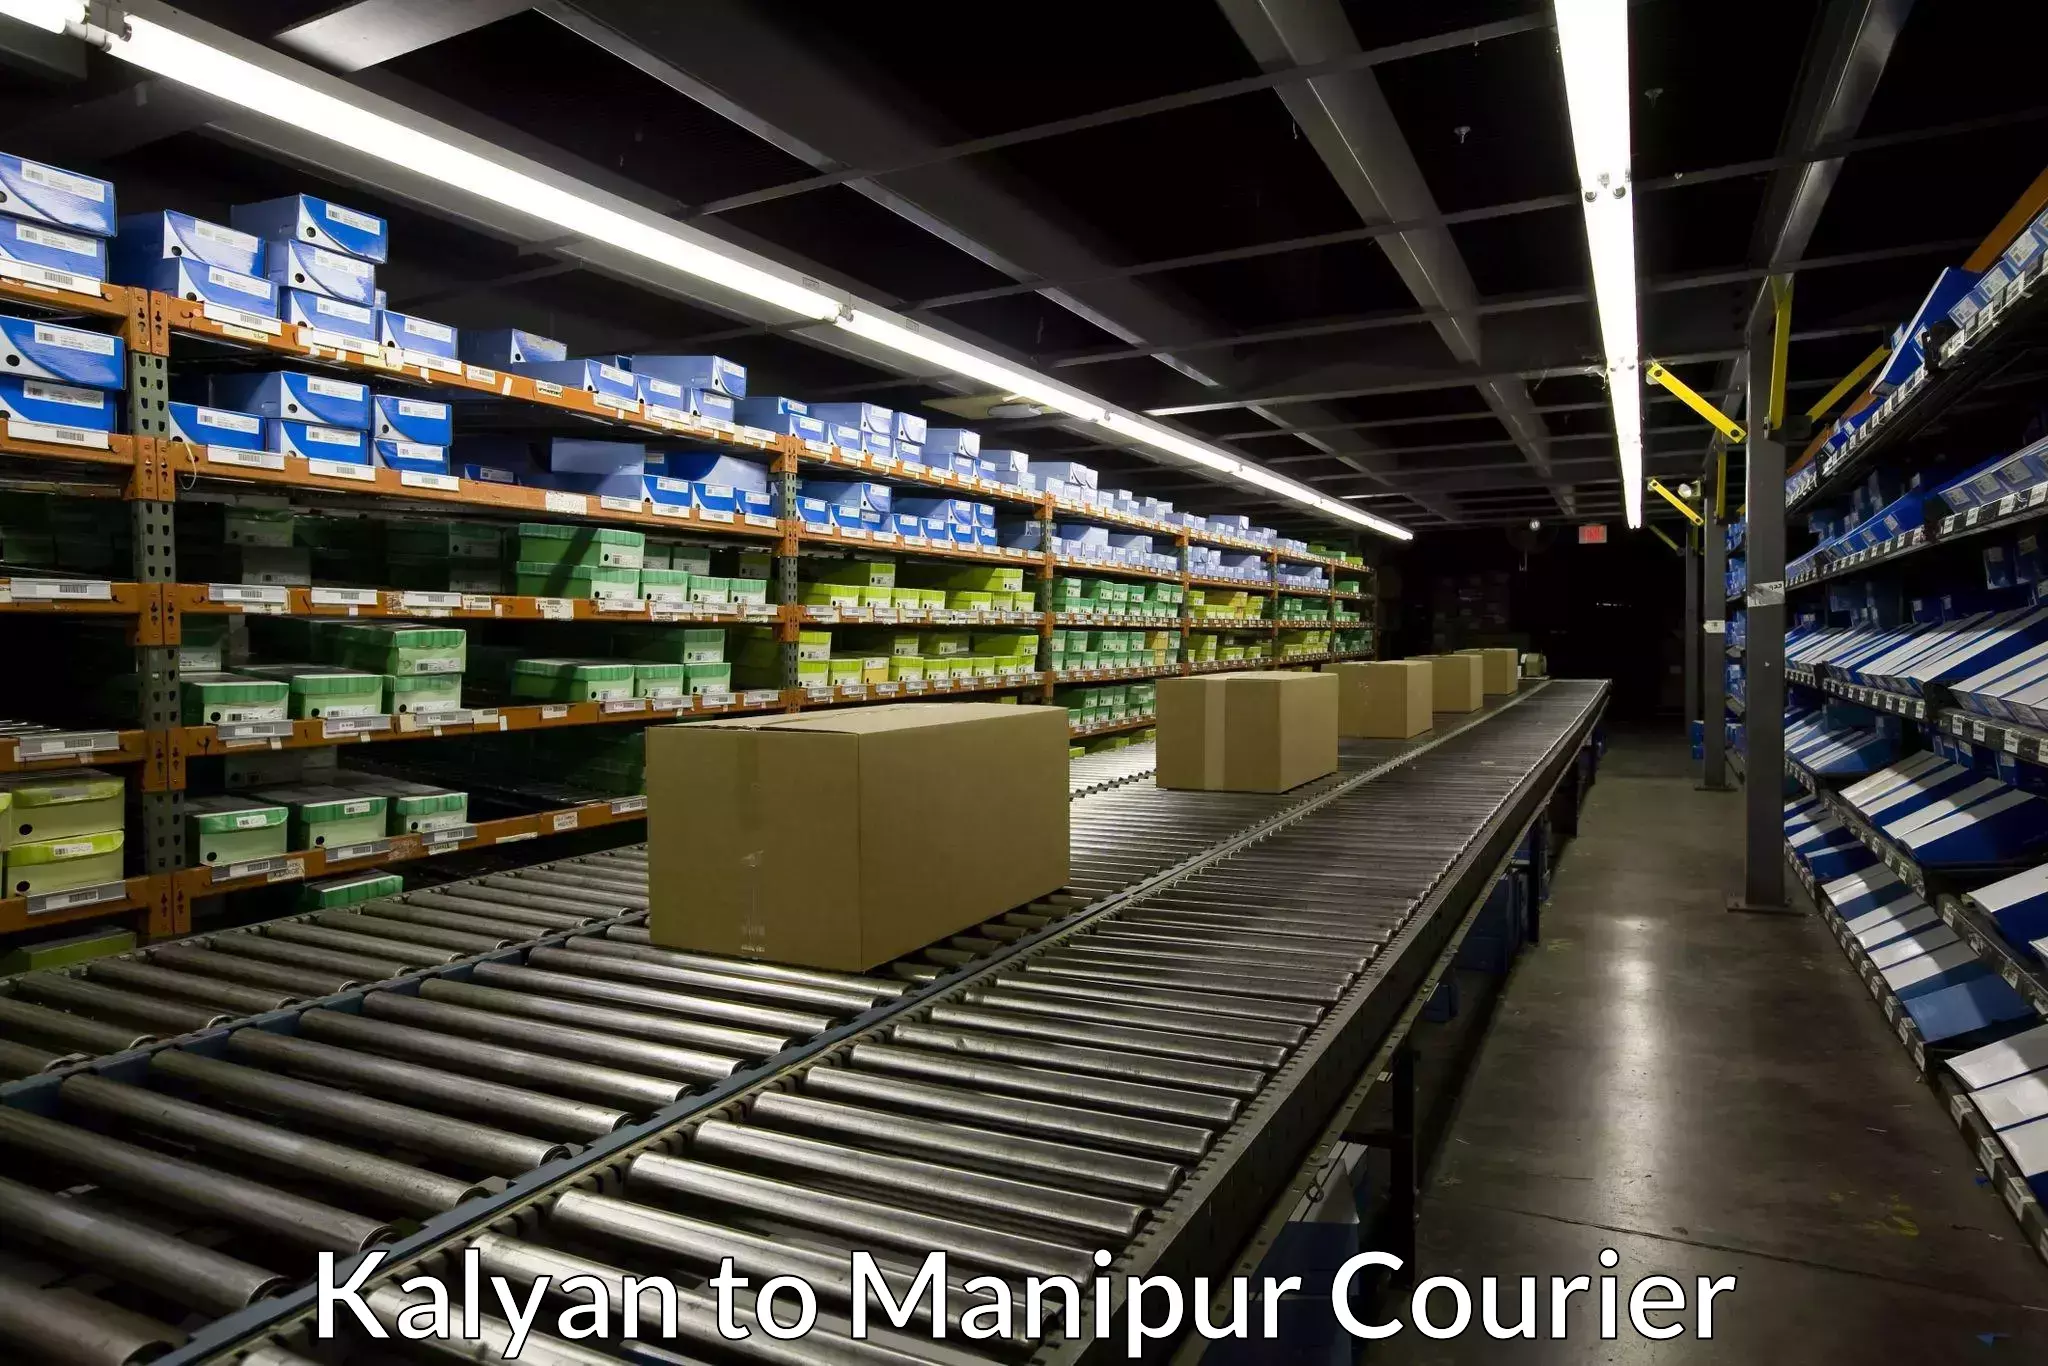 Tech-enabled shipping Kalyan to Kaptipada